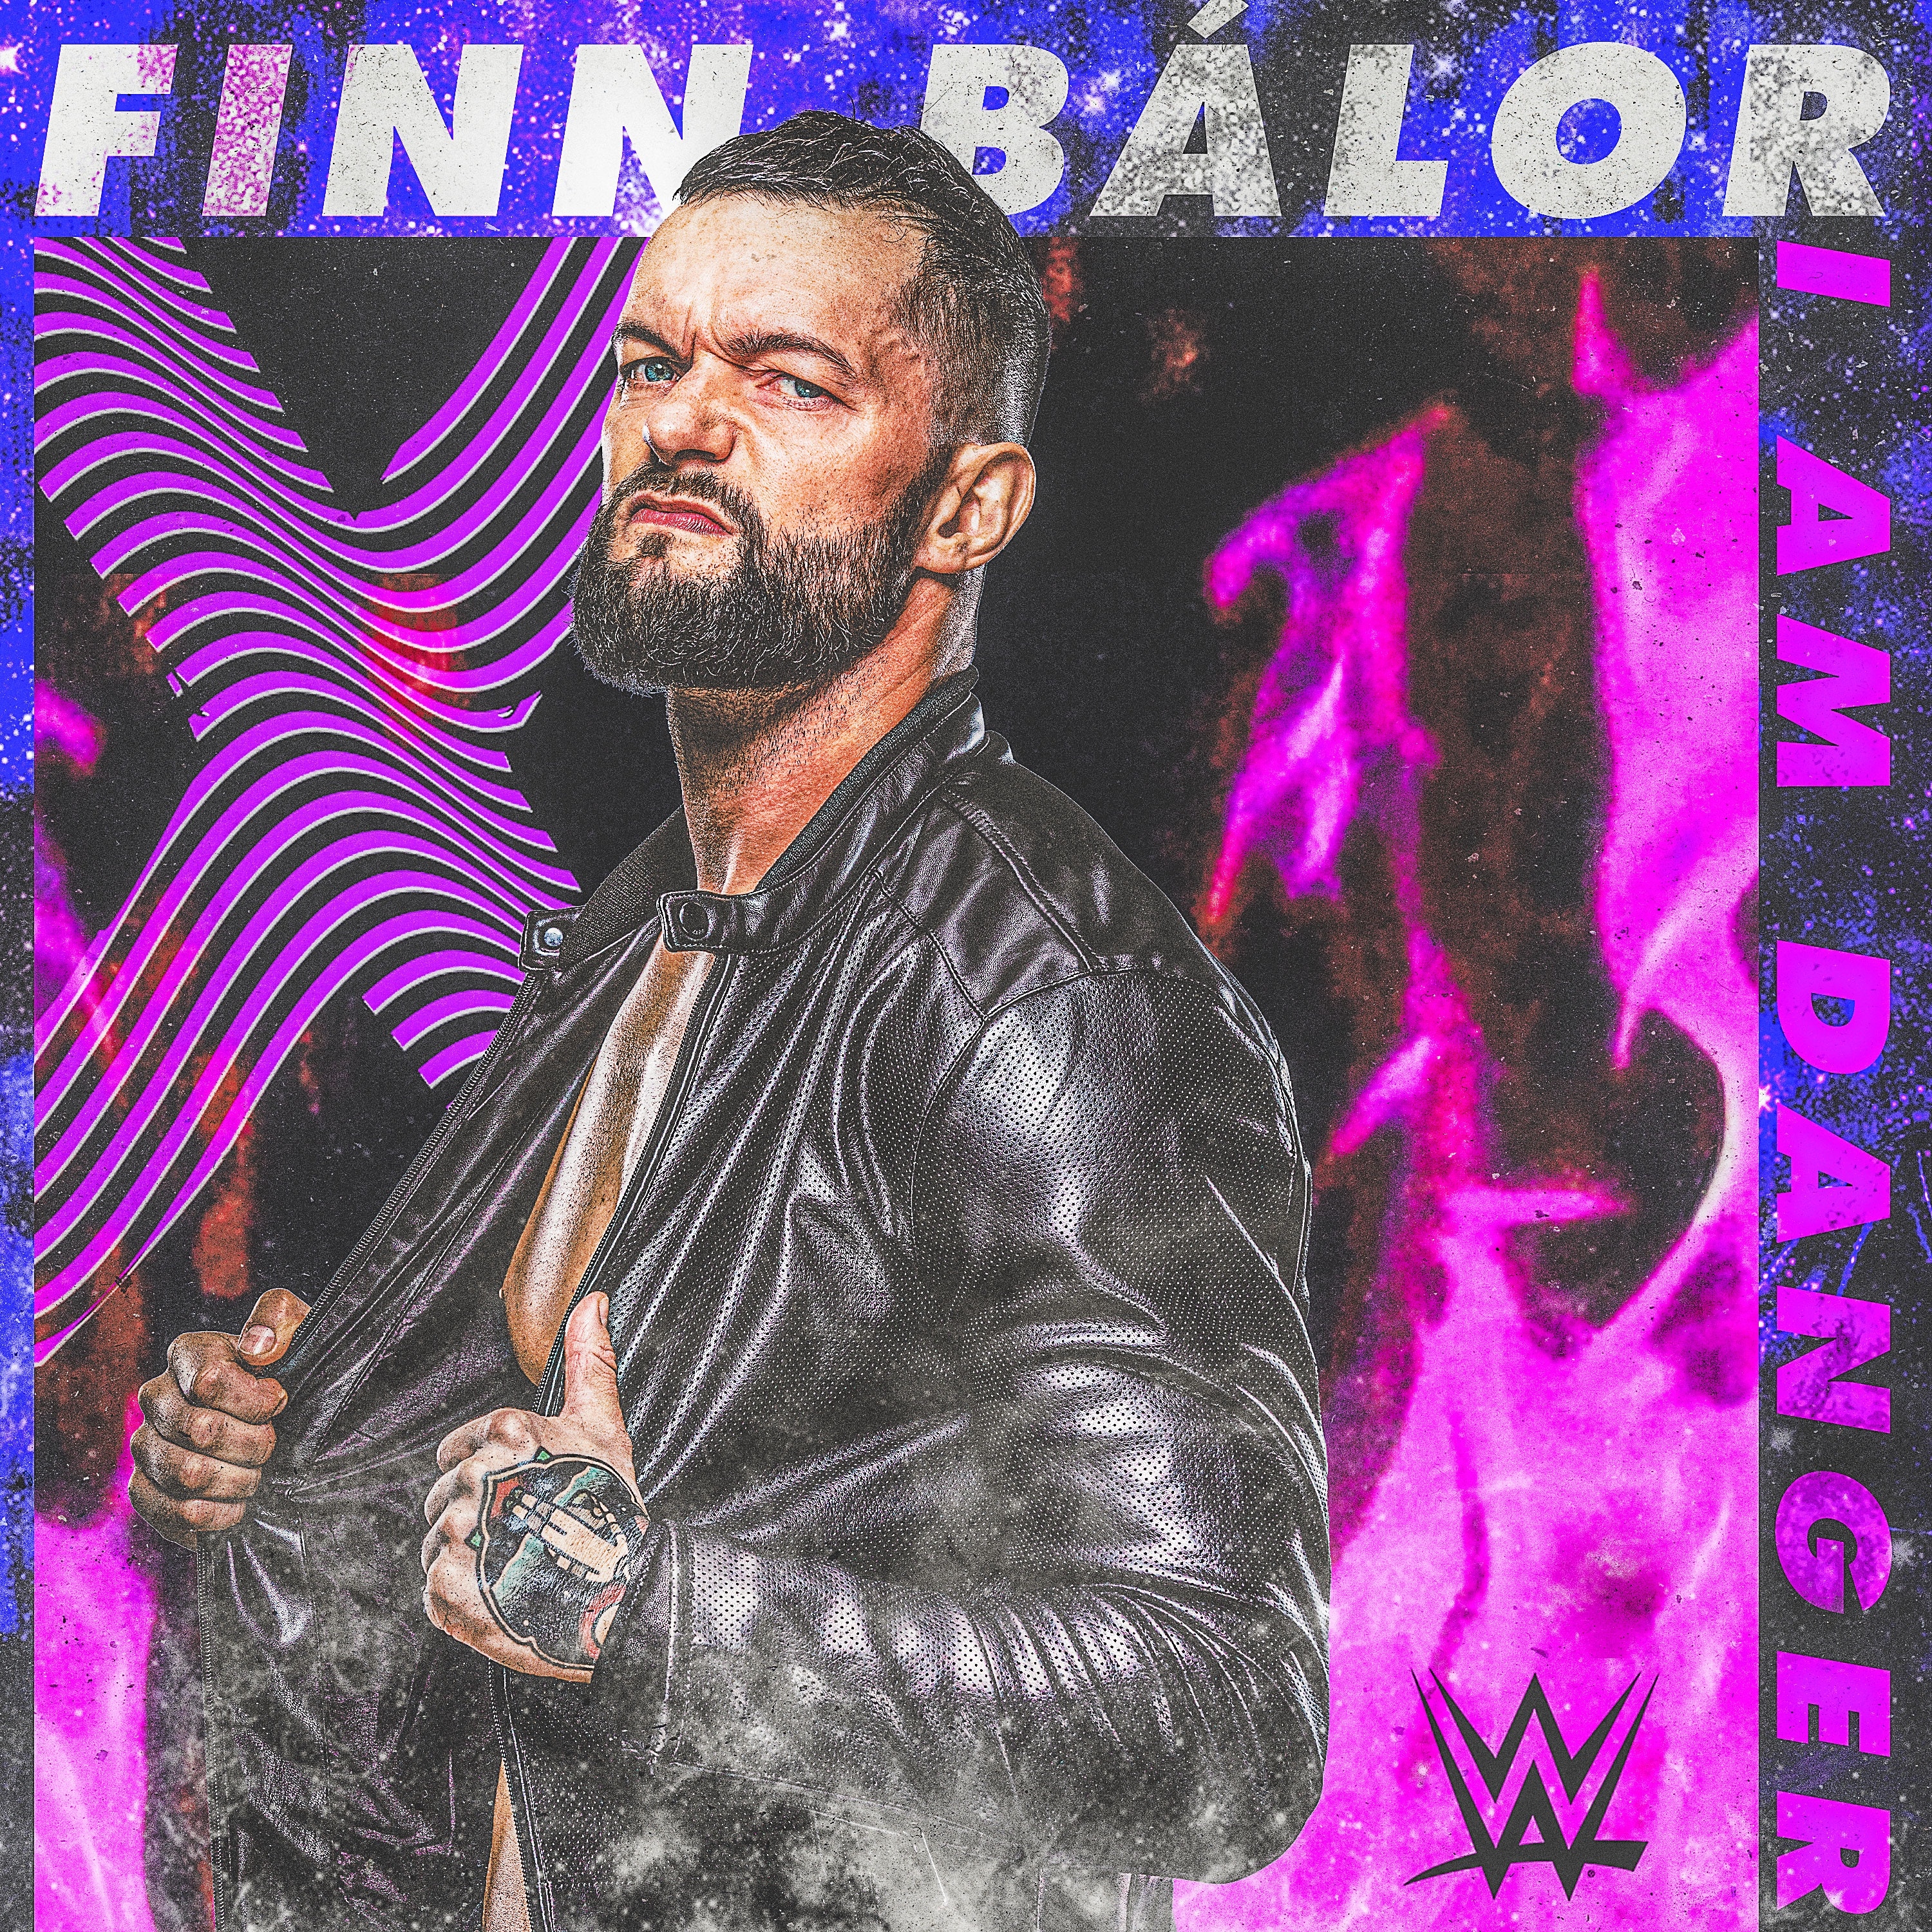 82013_FinnBalor_music_iTunes_WWE.jpeg